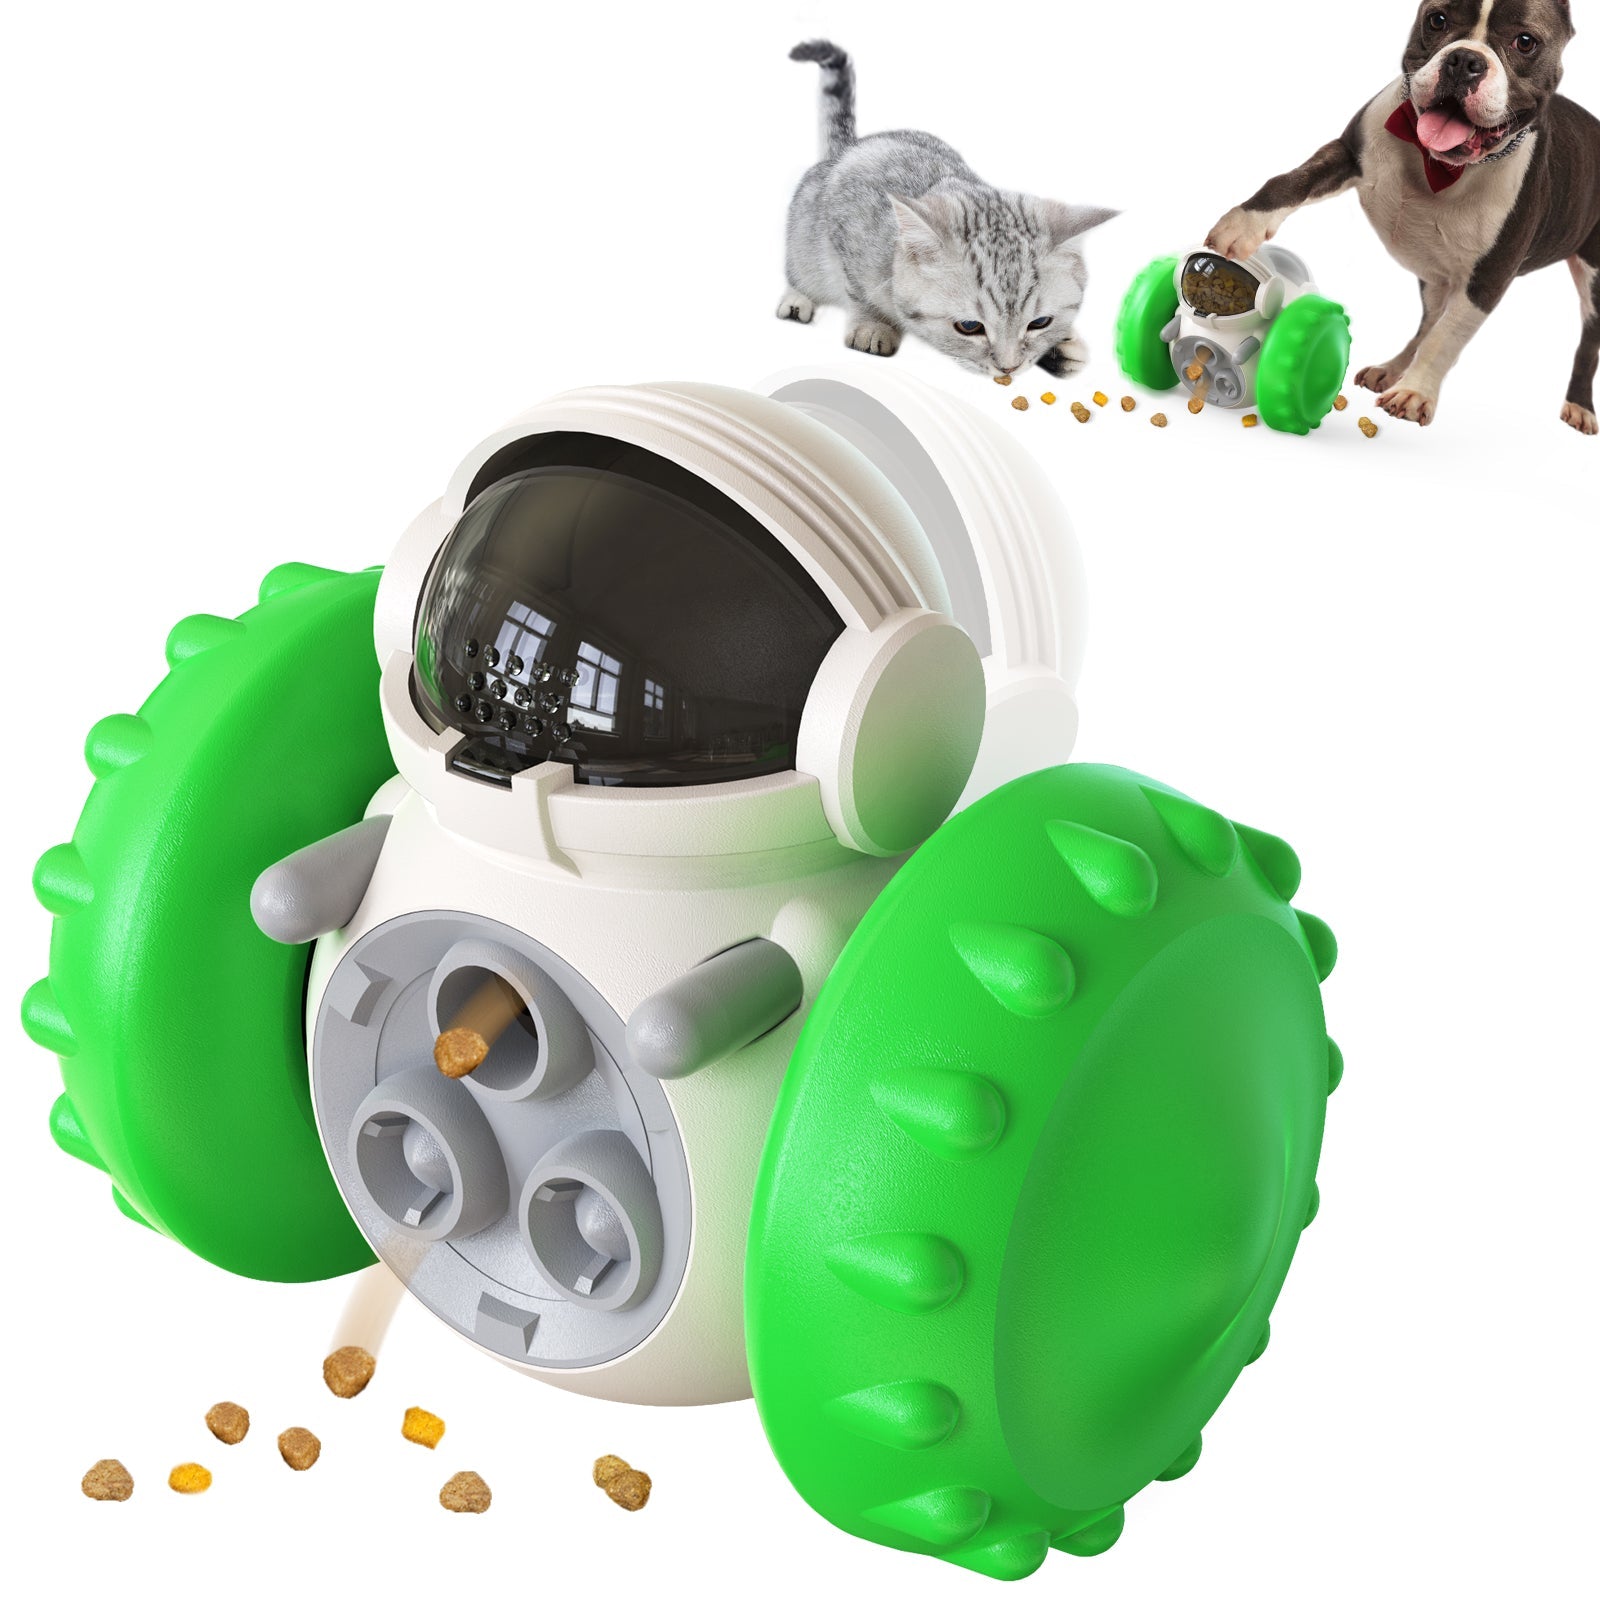 https://wowpetsmart.com/cdn/shop/products/slow-feeder-dog-bowl-toy-468287.jpg?v=1655841726&width=1946